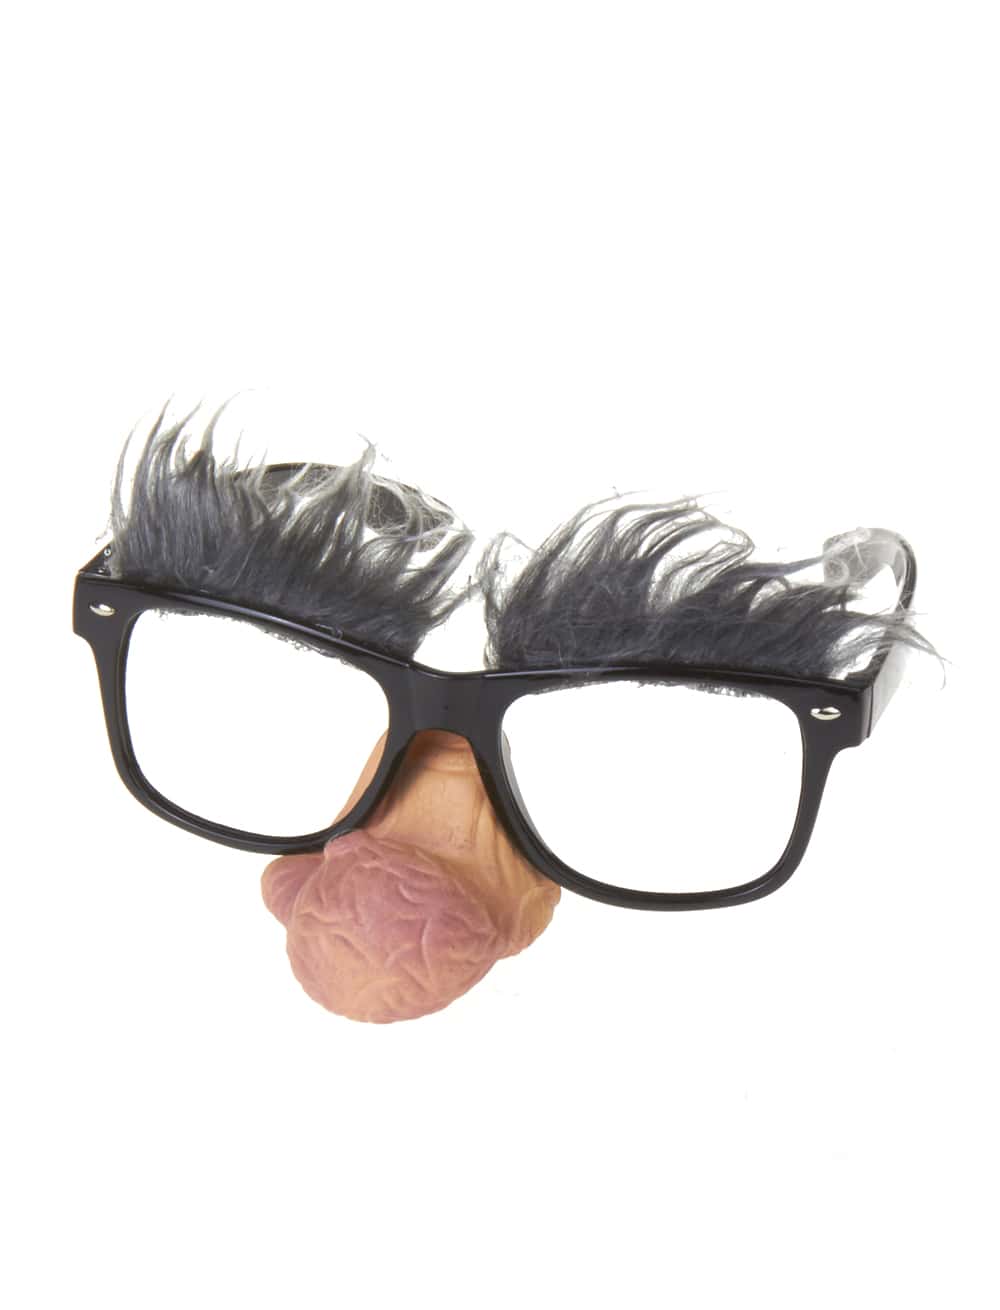 Brille mit grauen Augenbrauen und Warzennase